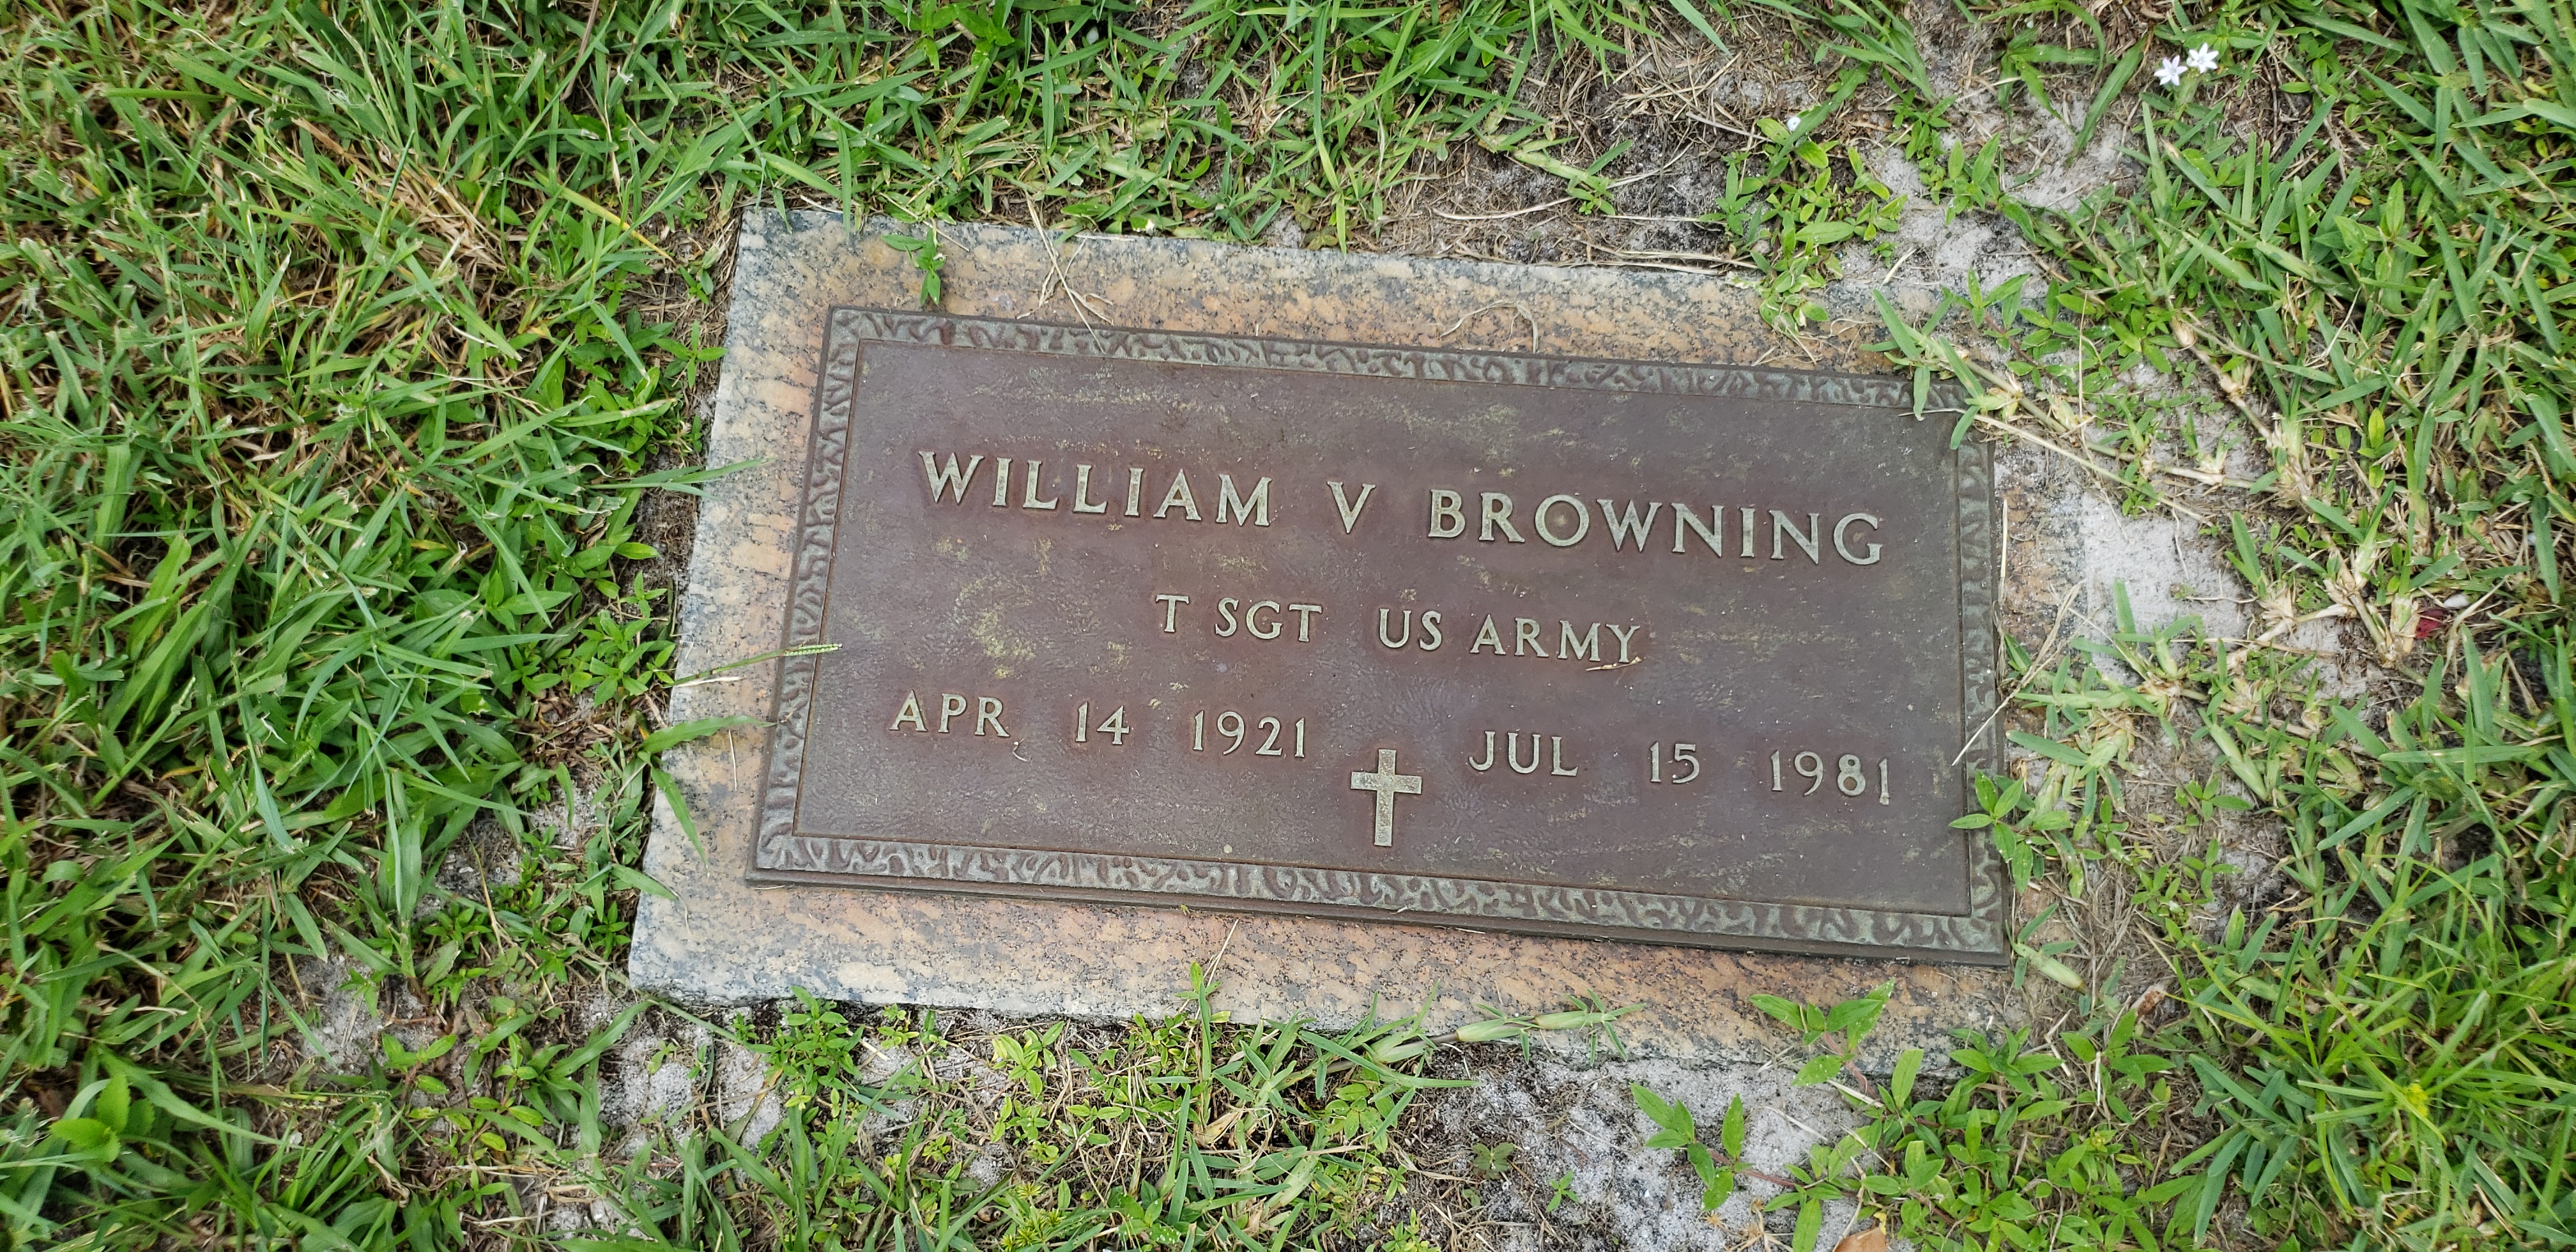 William V Browning